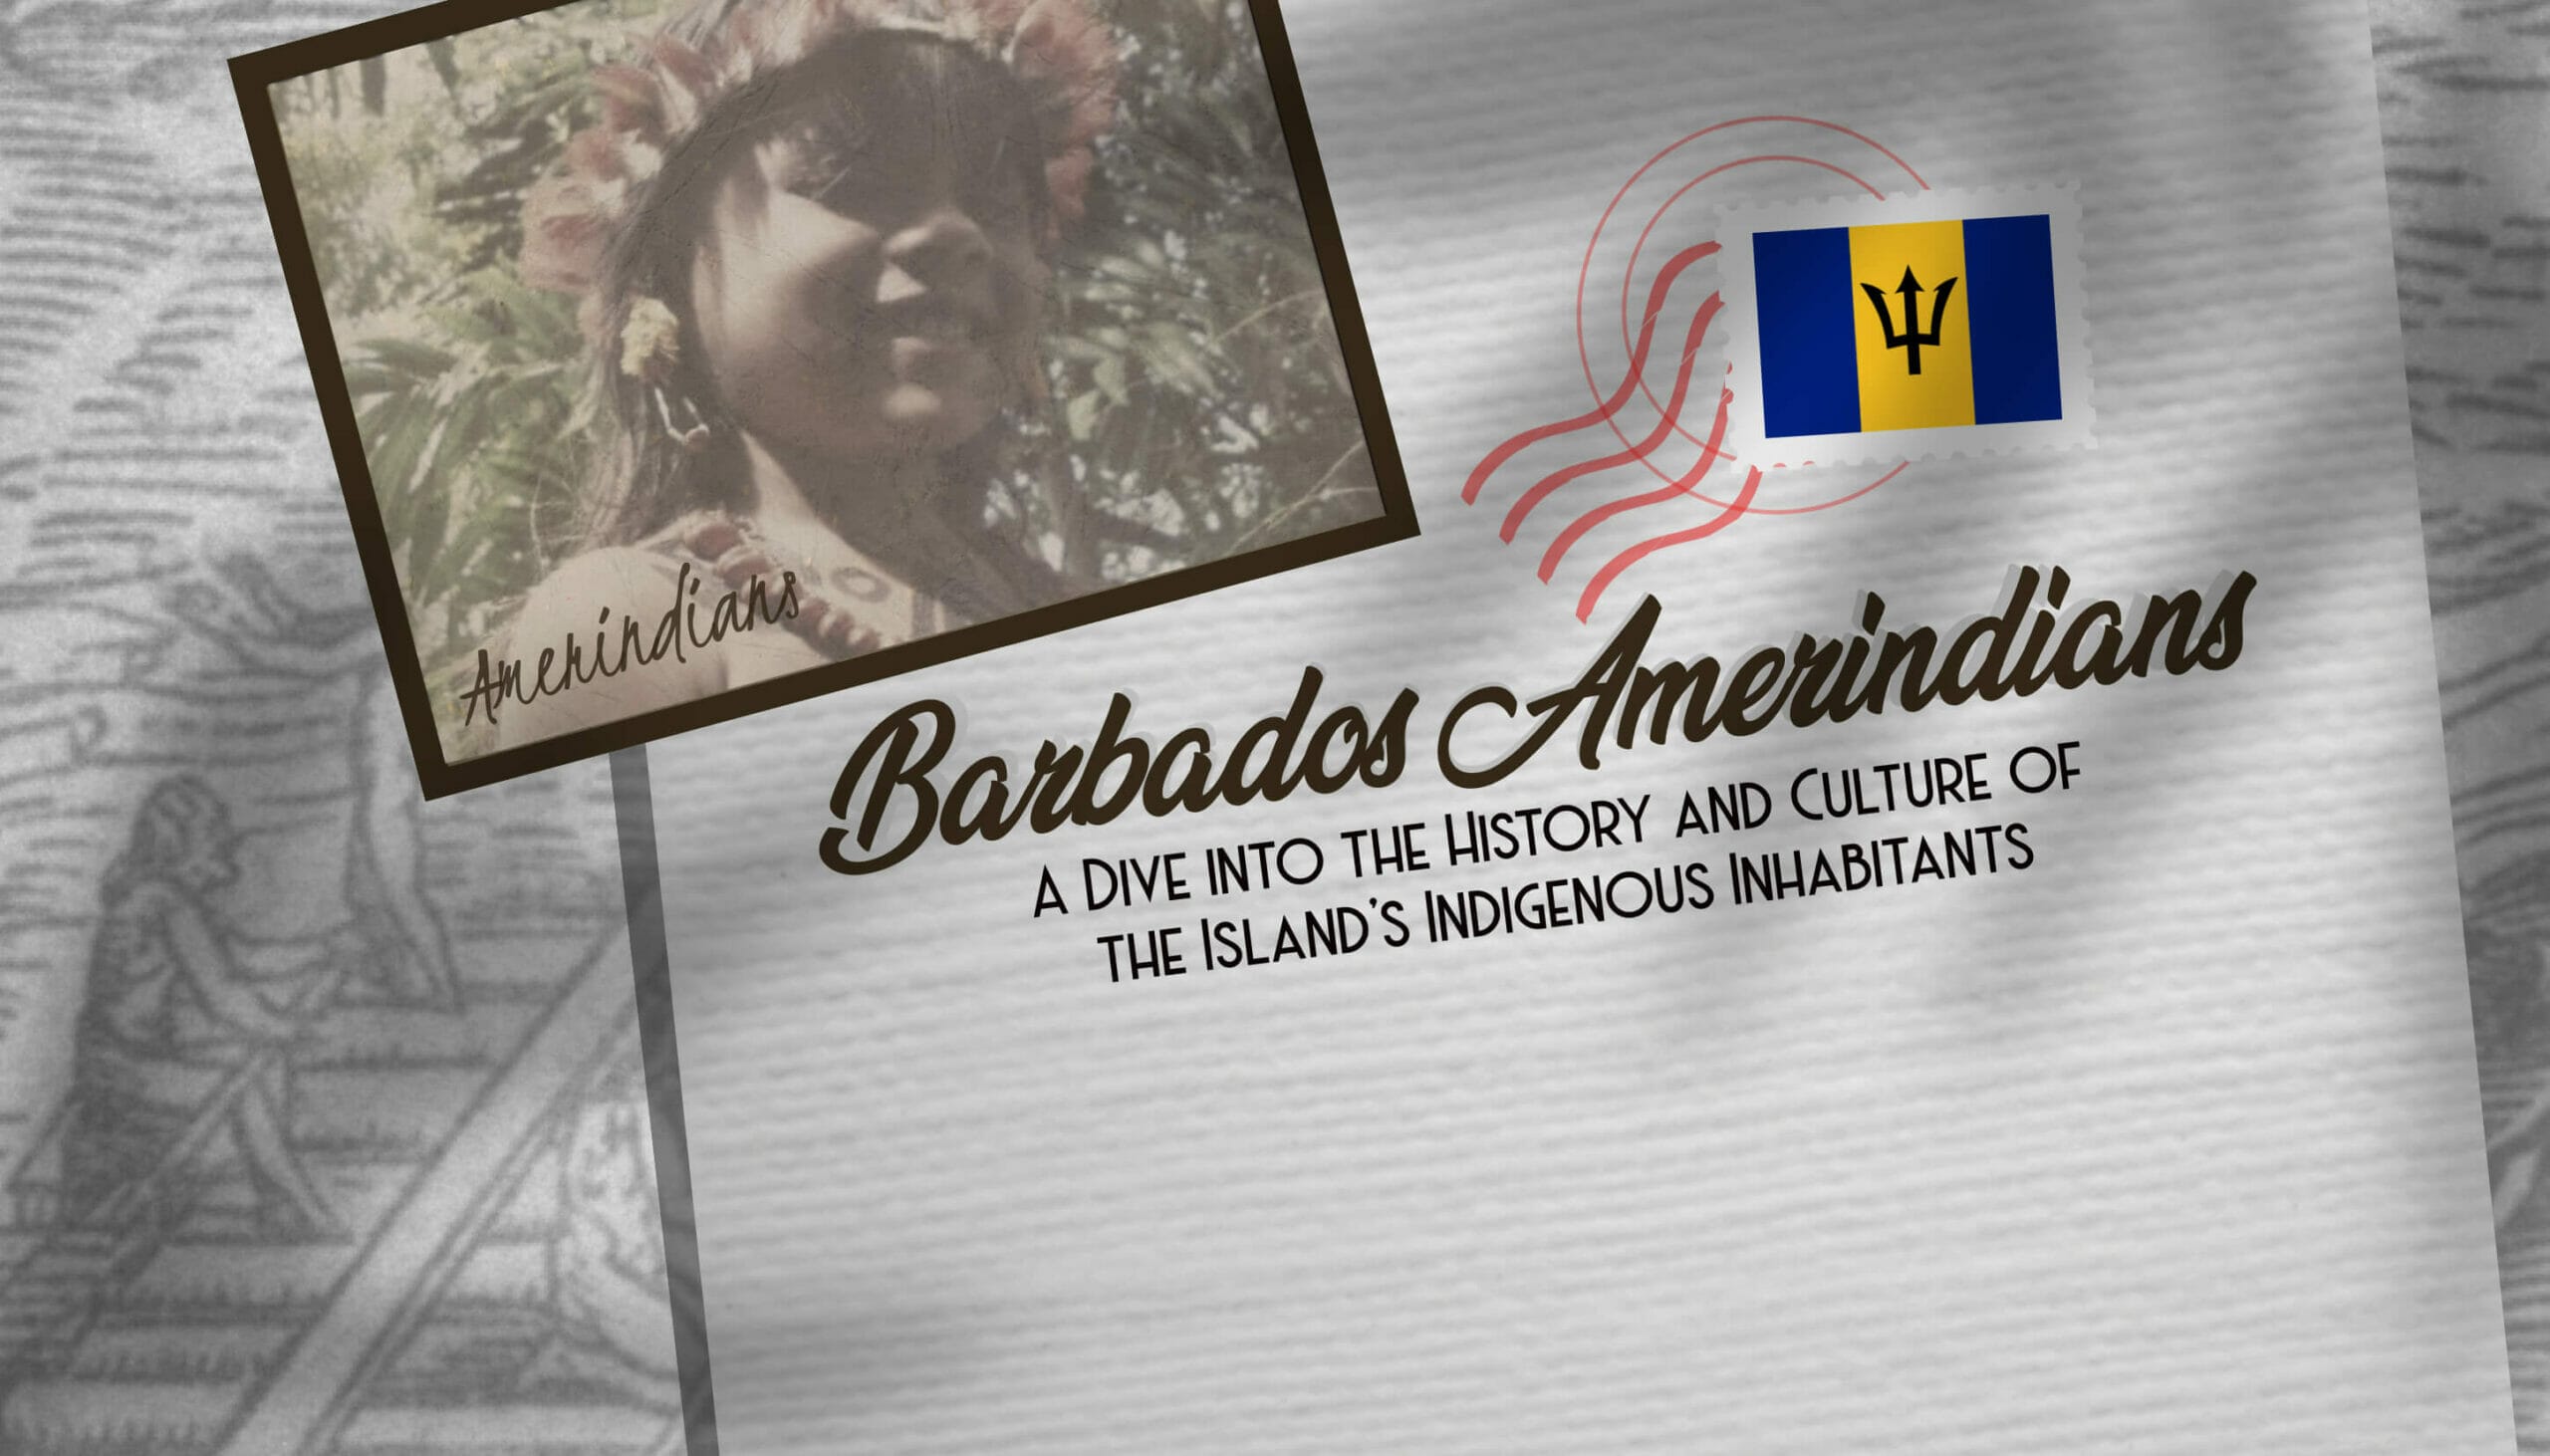 Barbados Amerindians